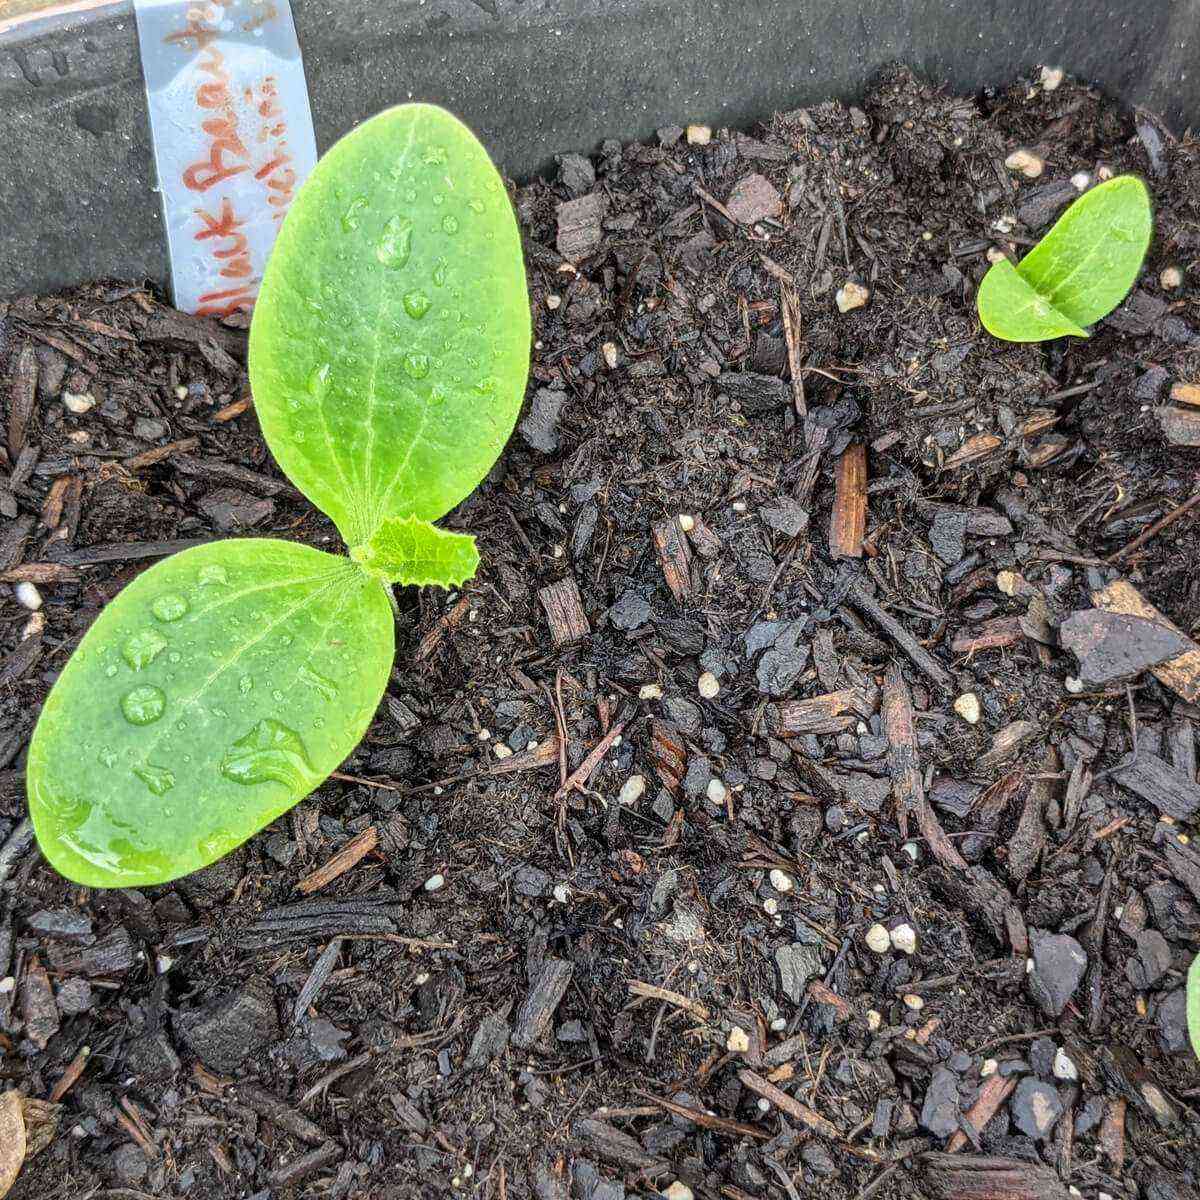 Funktioner ved dyrkning og pleje af frøplanter af zucchini